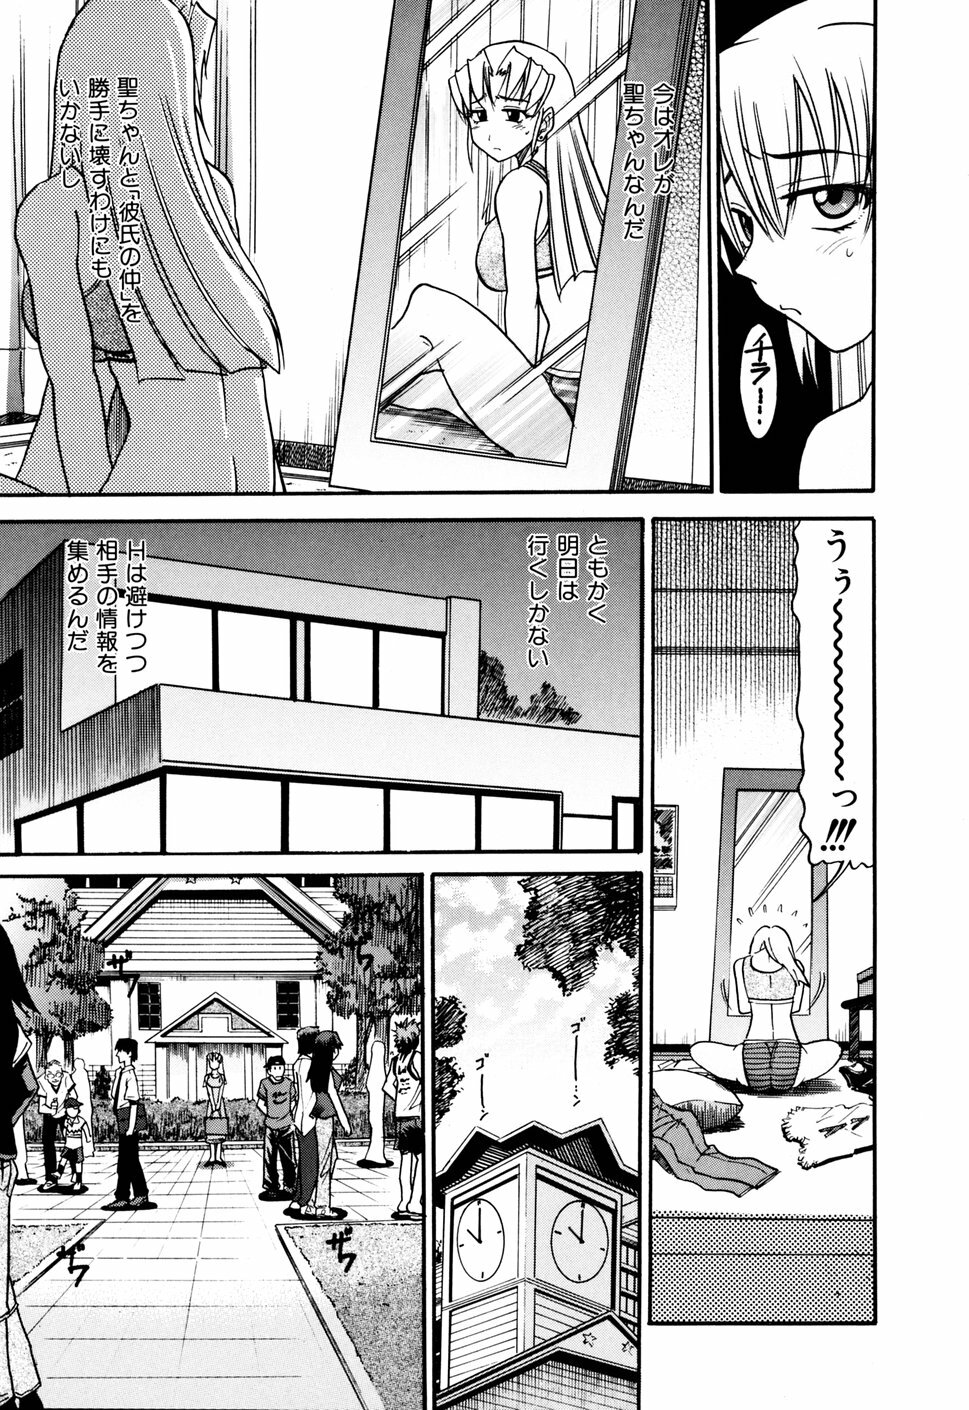 [DISTANCE] Ochiru Tenshi Vol. 1 page 49 full